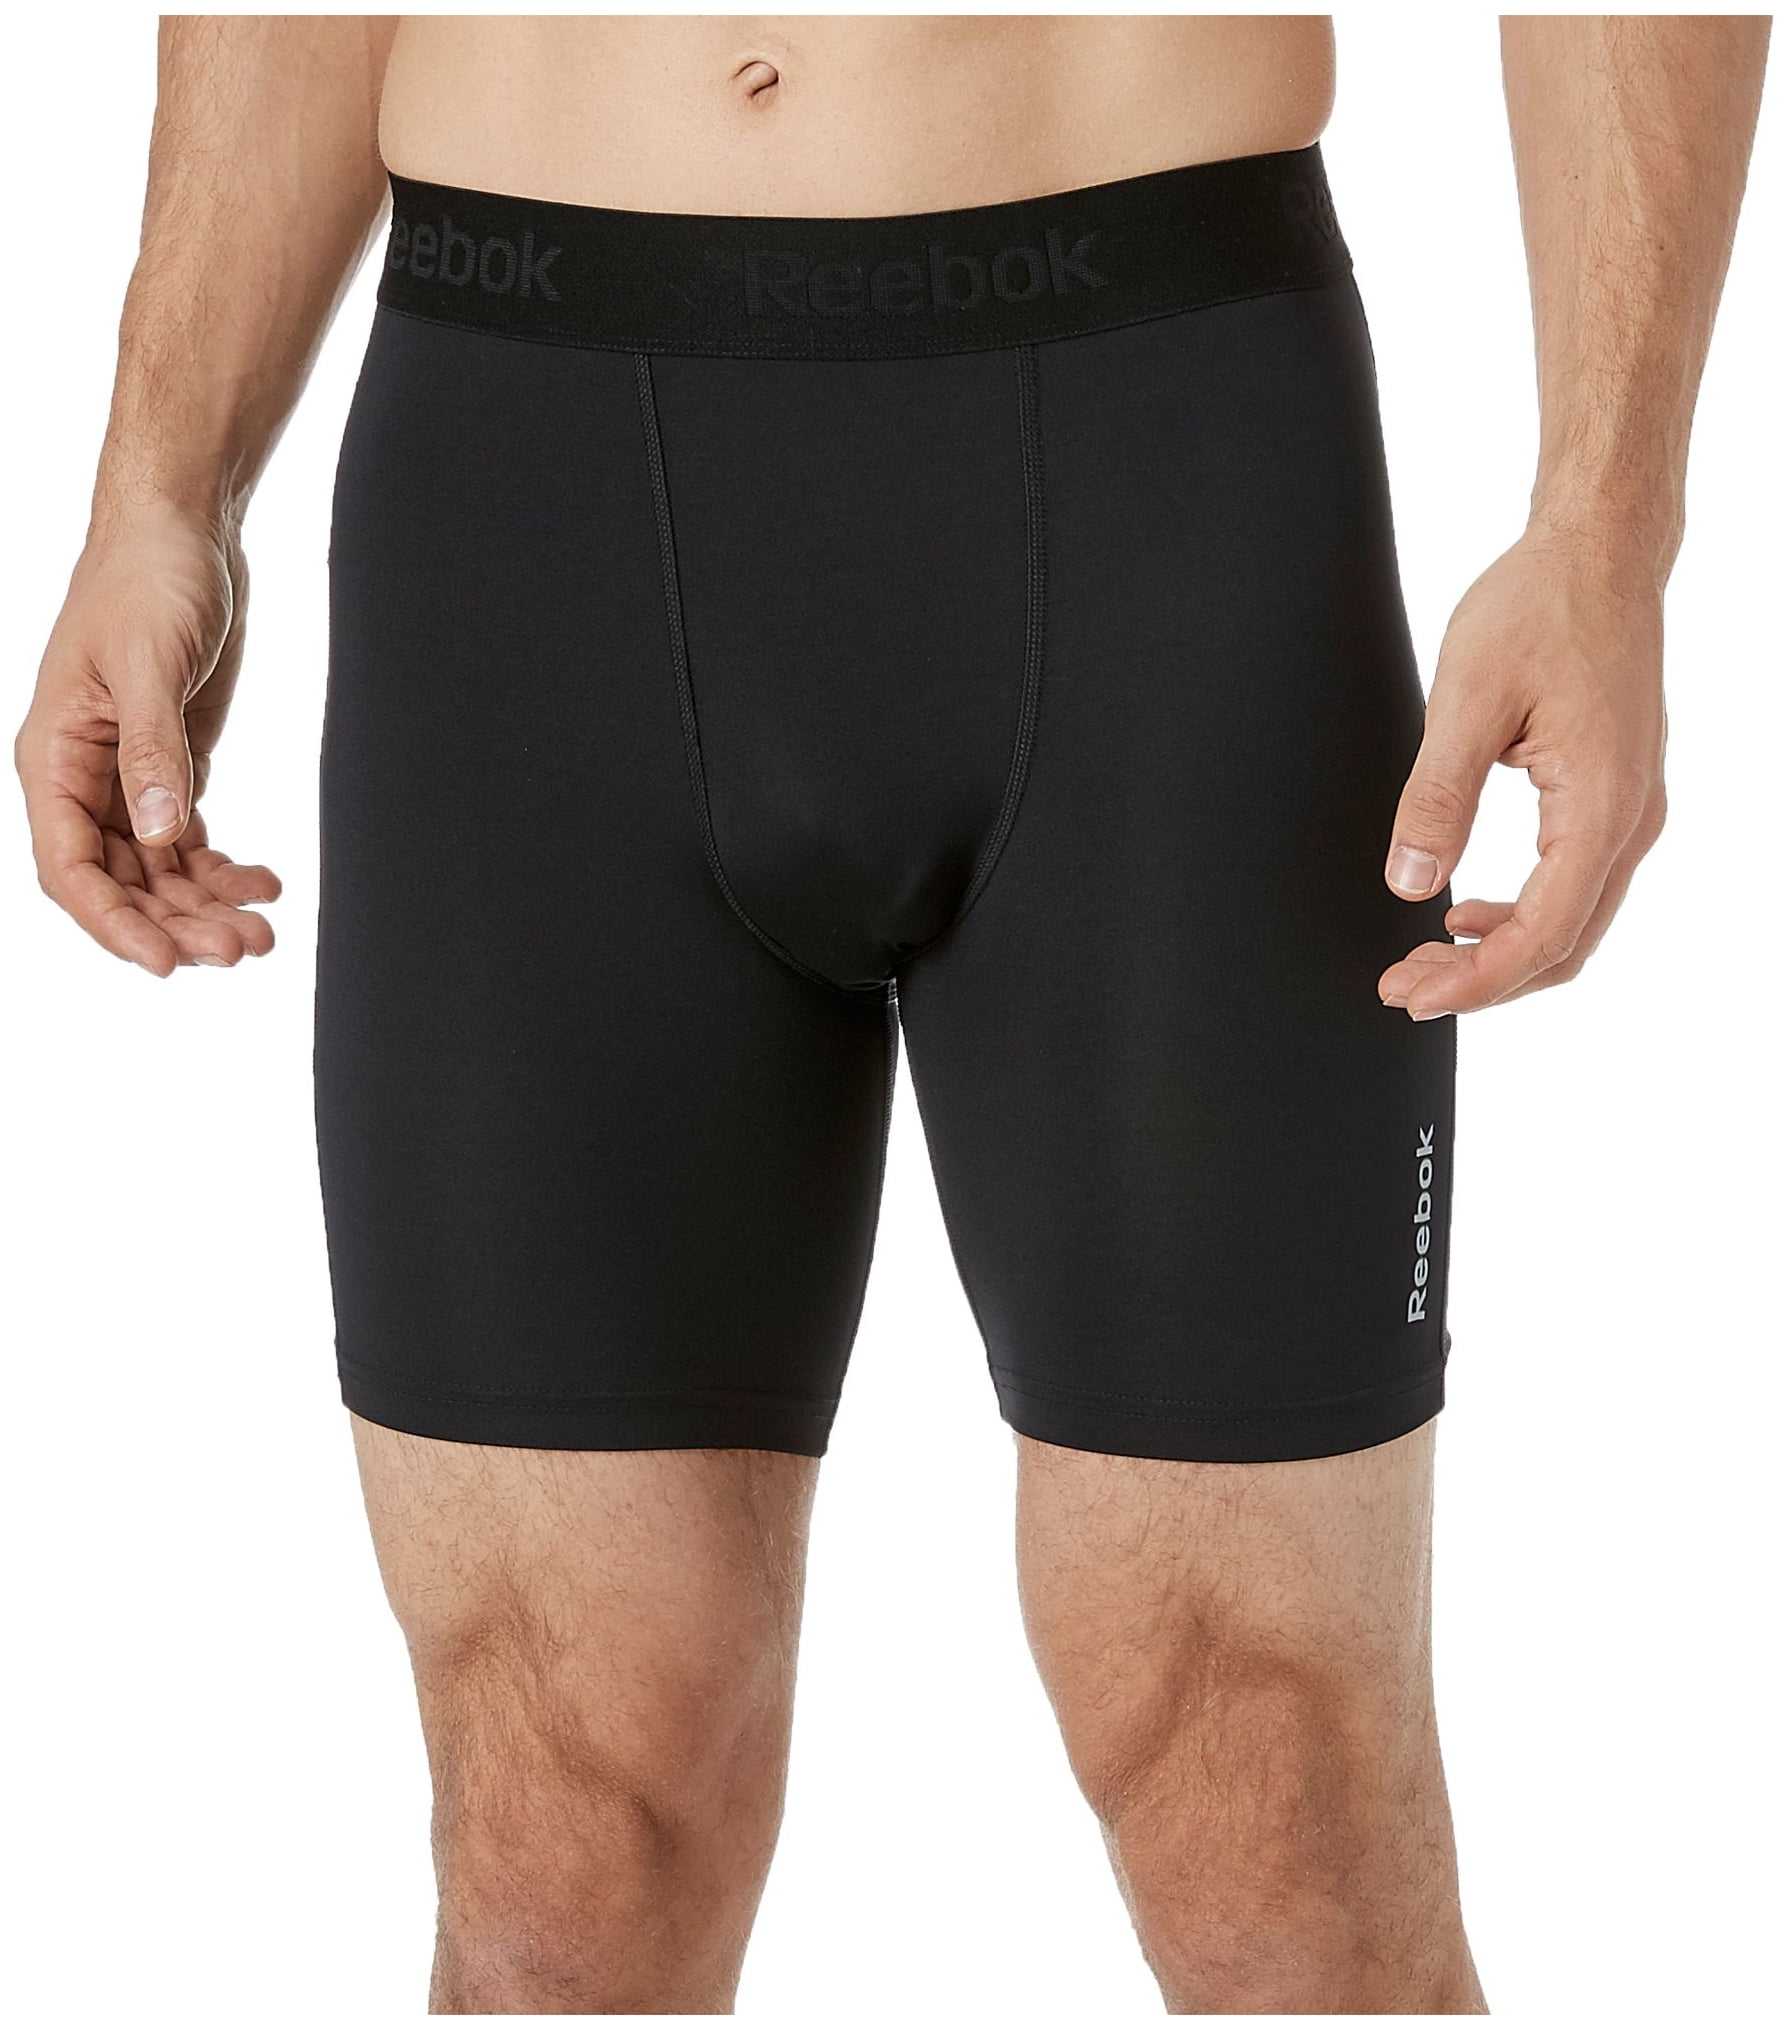 reebok men's 7 compression shorts